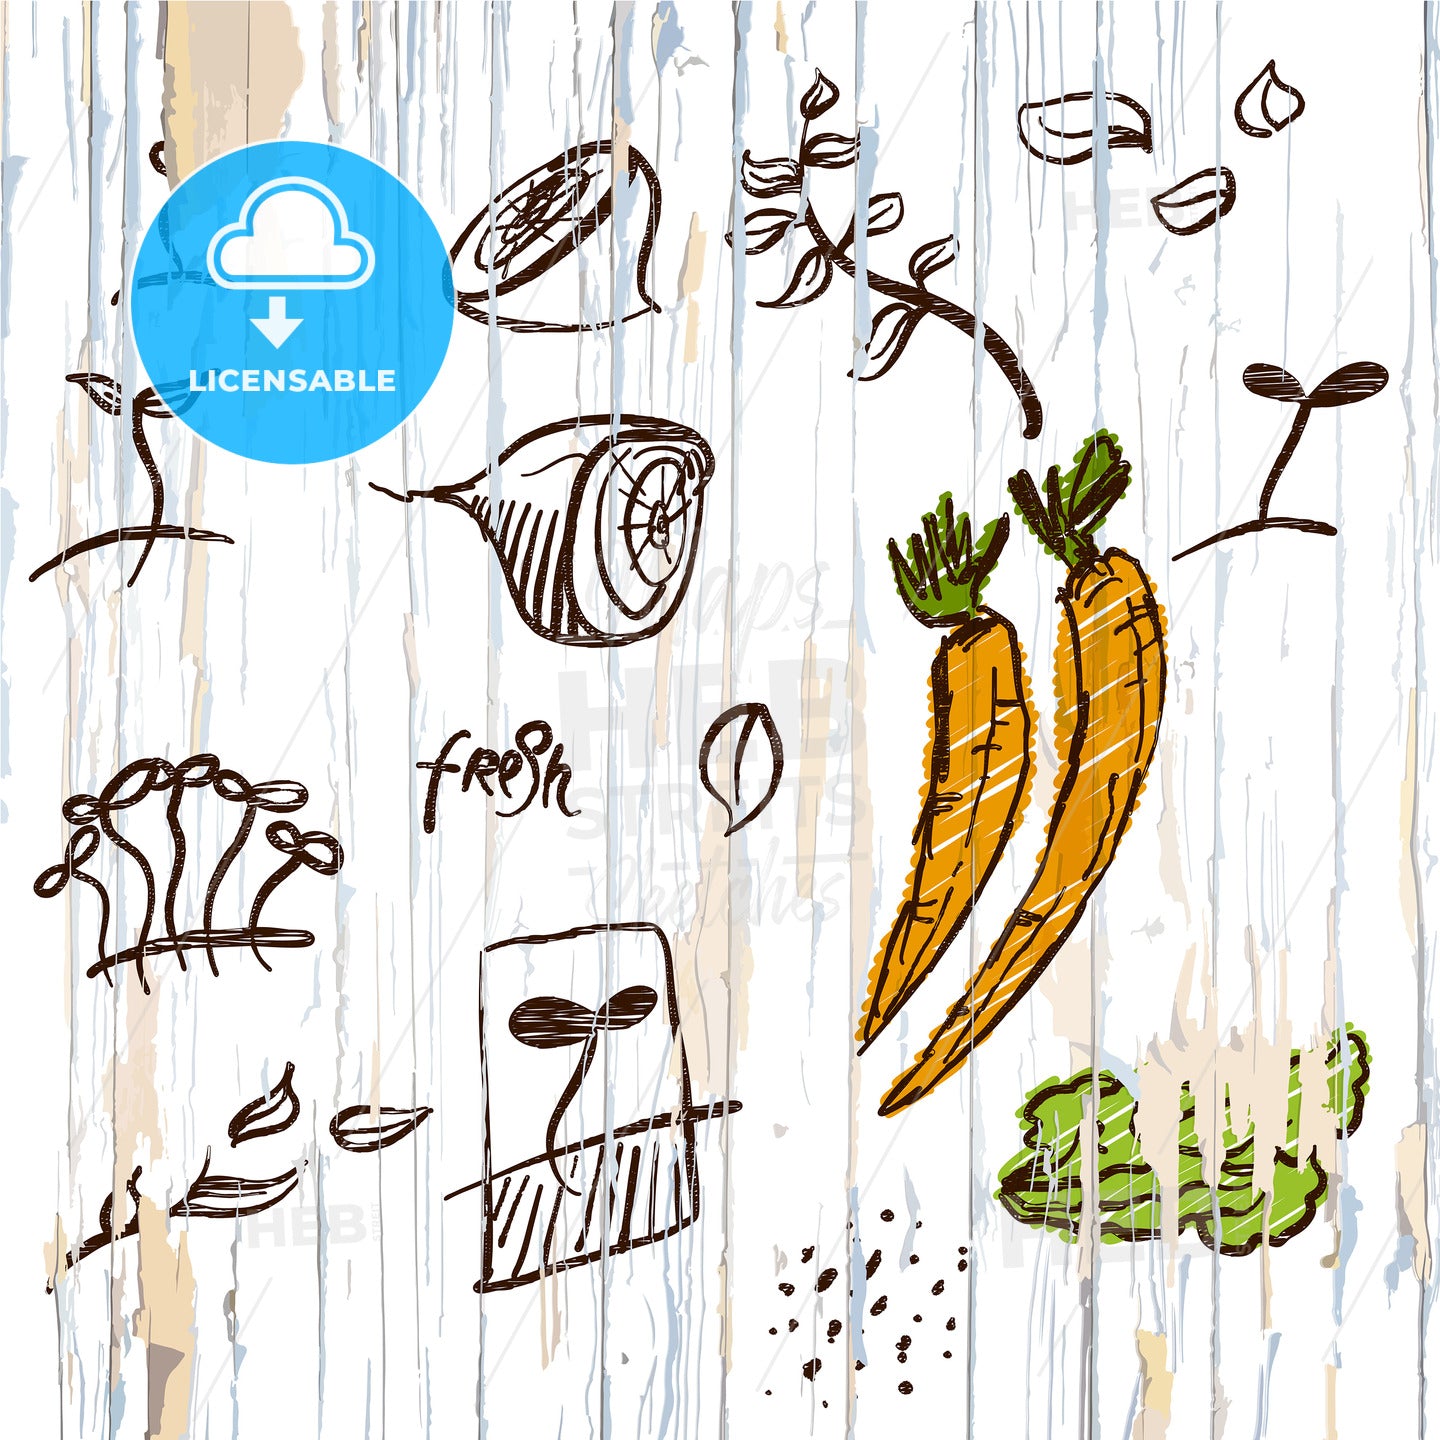 Sketched vegetables menu background – instant download